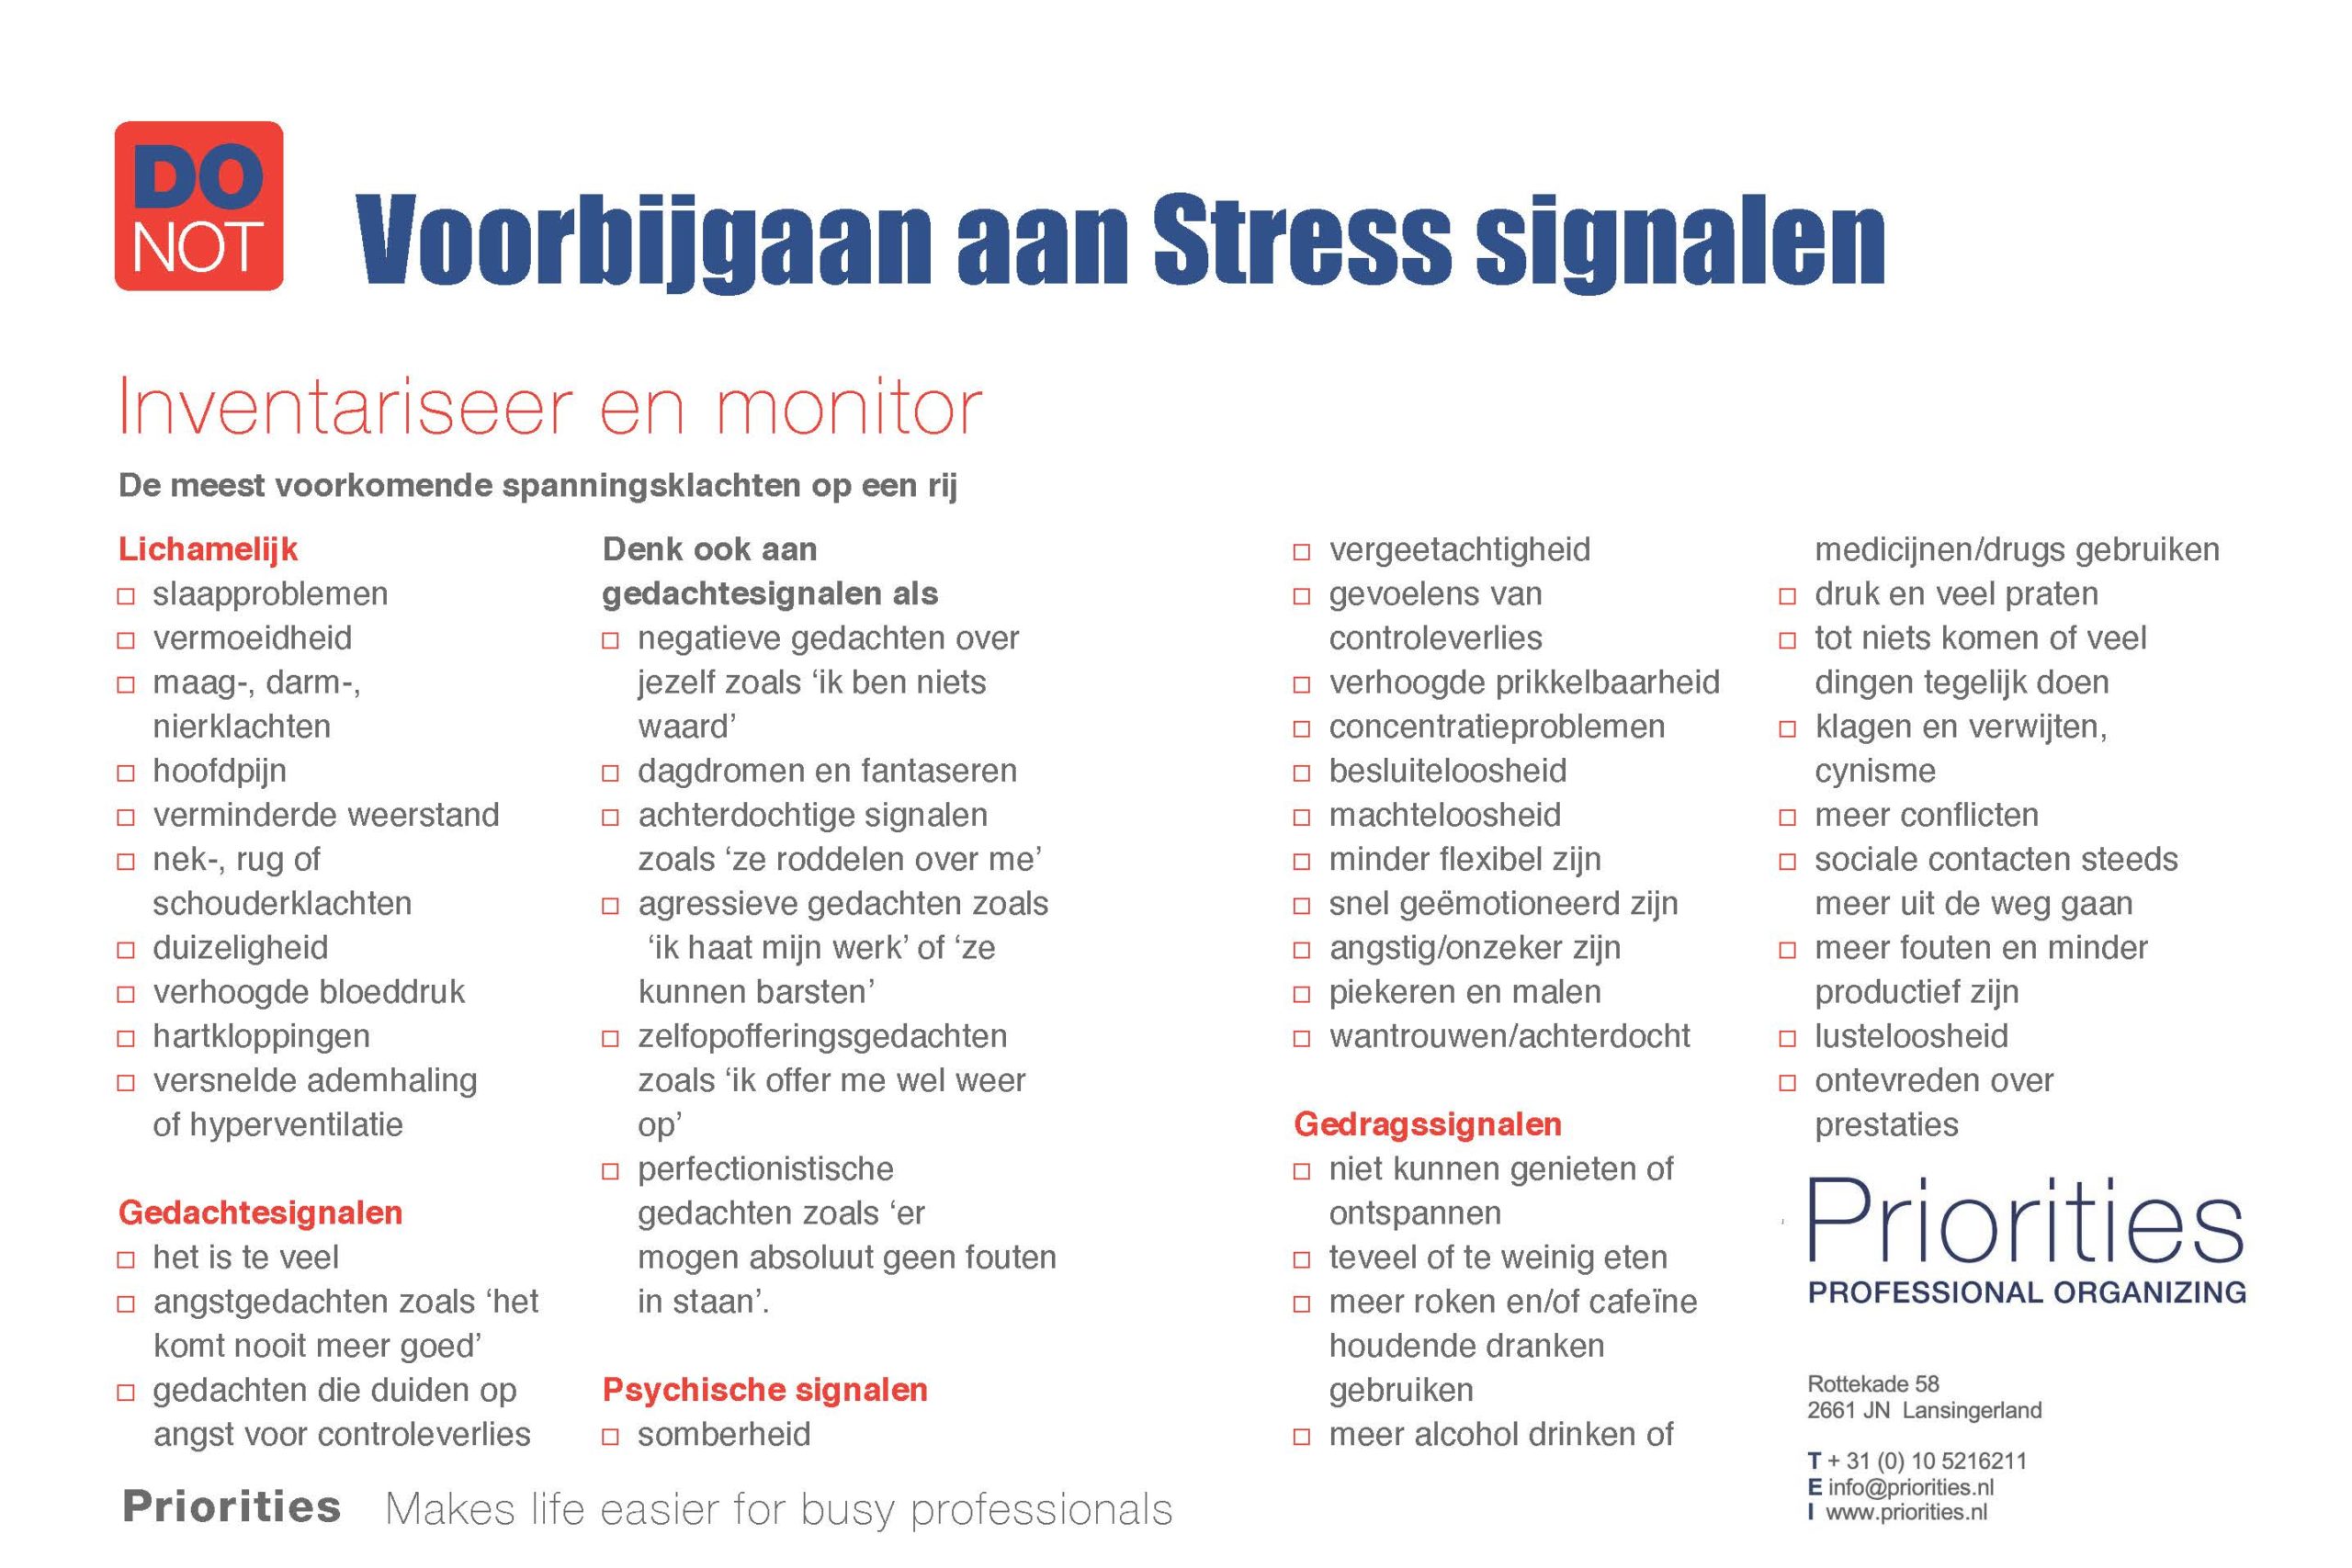 Priorities: Monitor uw Stress Signalen